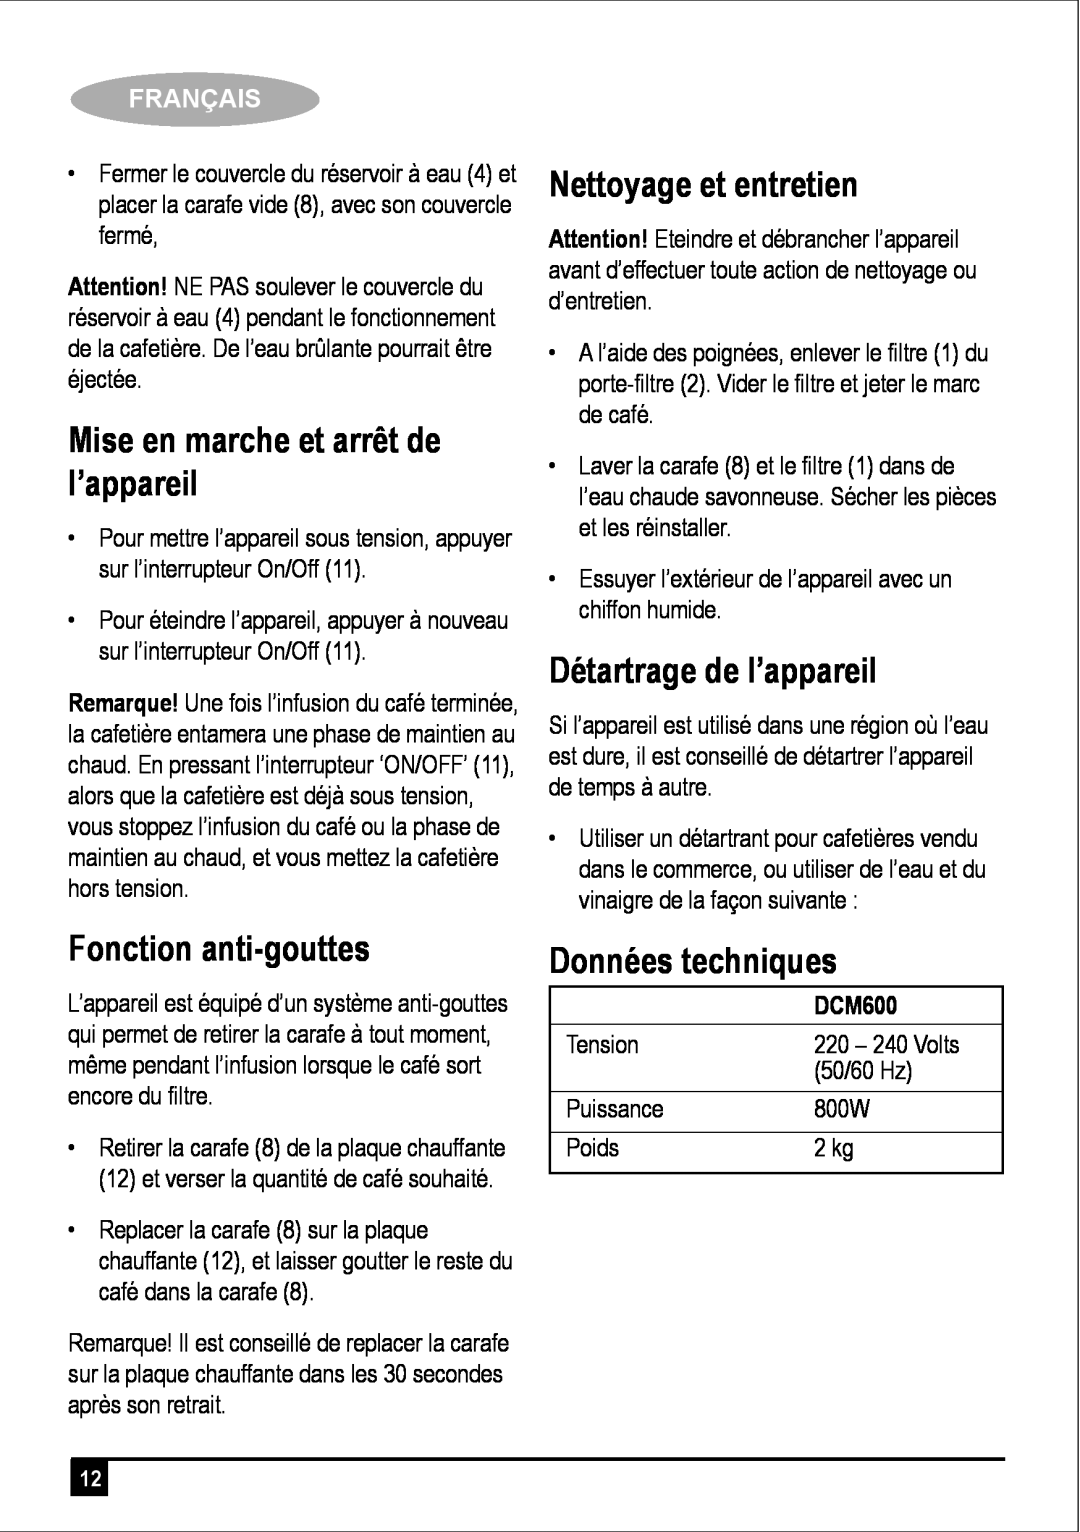 Black & Decker DCM600 manual Mise en marche et arrêt de l’appareil, Fonction anti-gouttes, Nettoyage et entretien, Français 